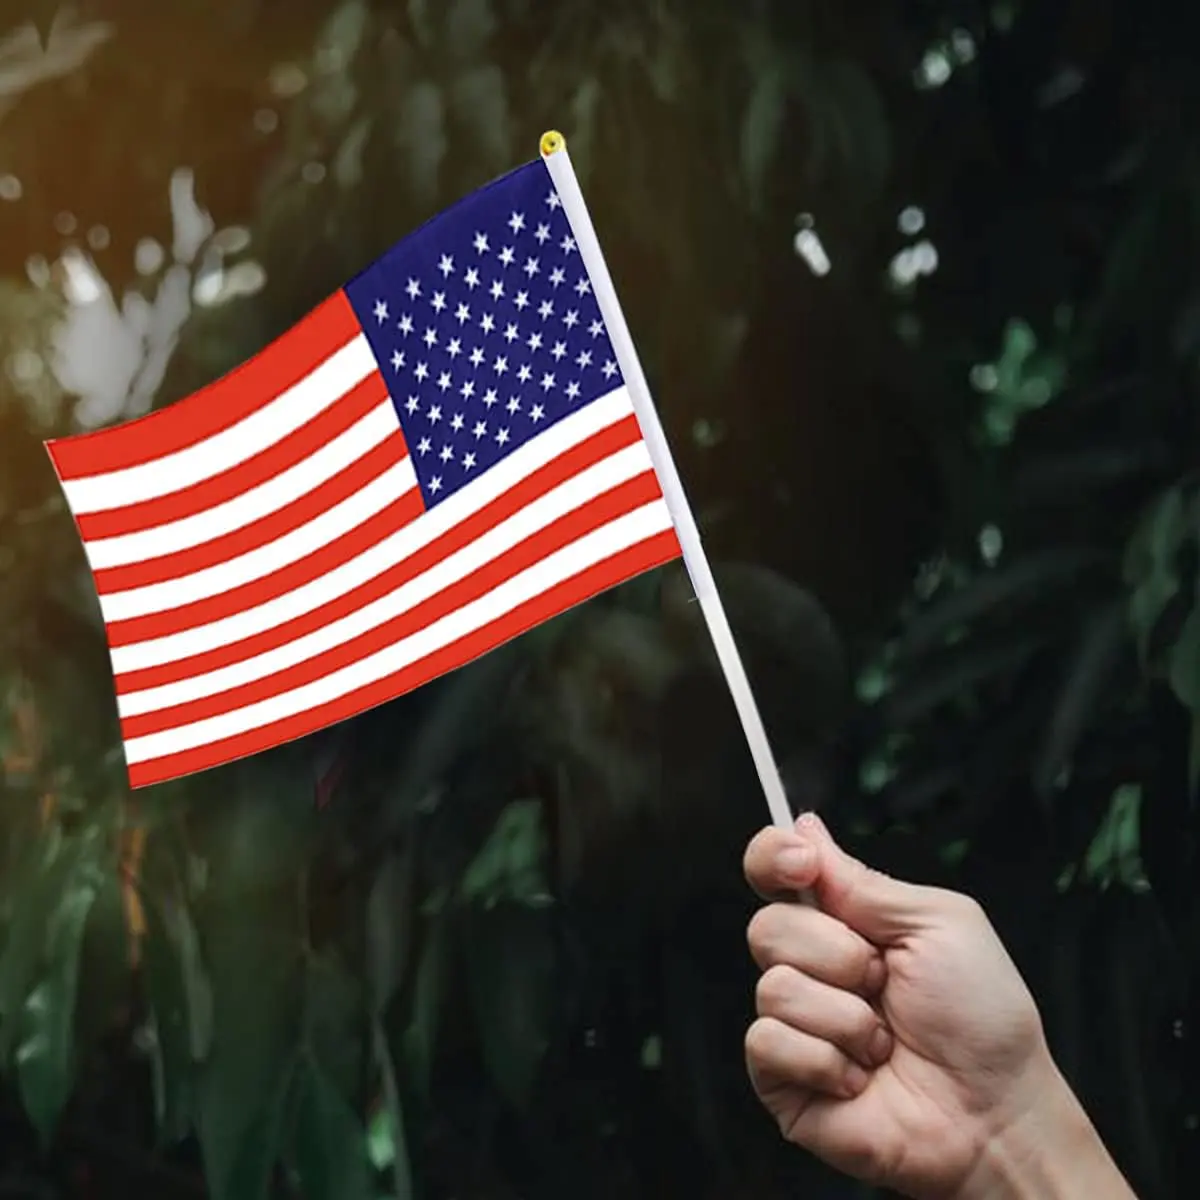 Heyuan Bandeira personalizada com mastro de bandeira americana dos EUA, bandeira promocional estilo mini bandeiras do Reino Unido com mastro de bandeira